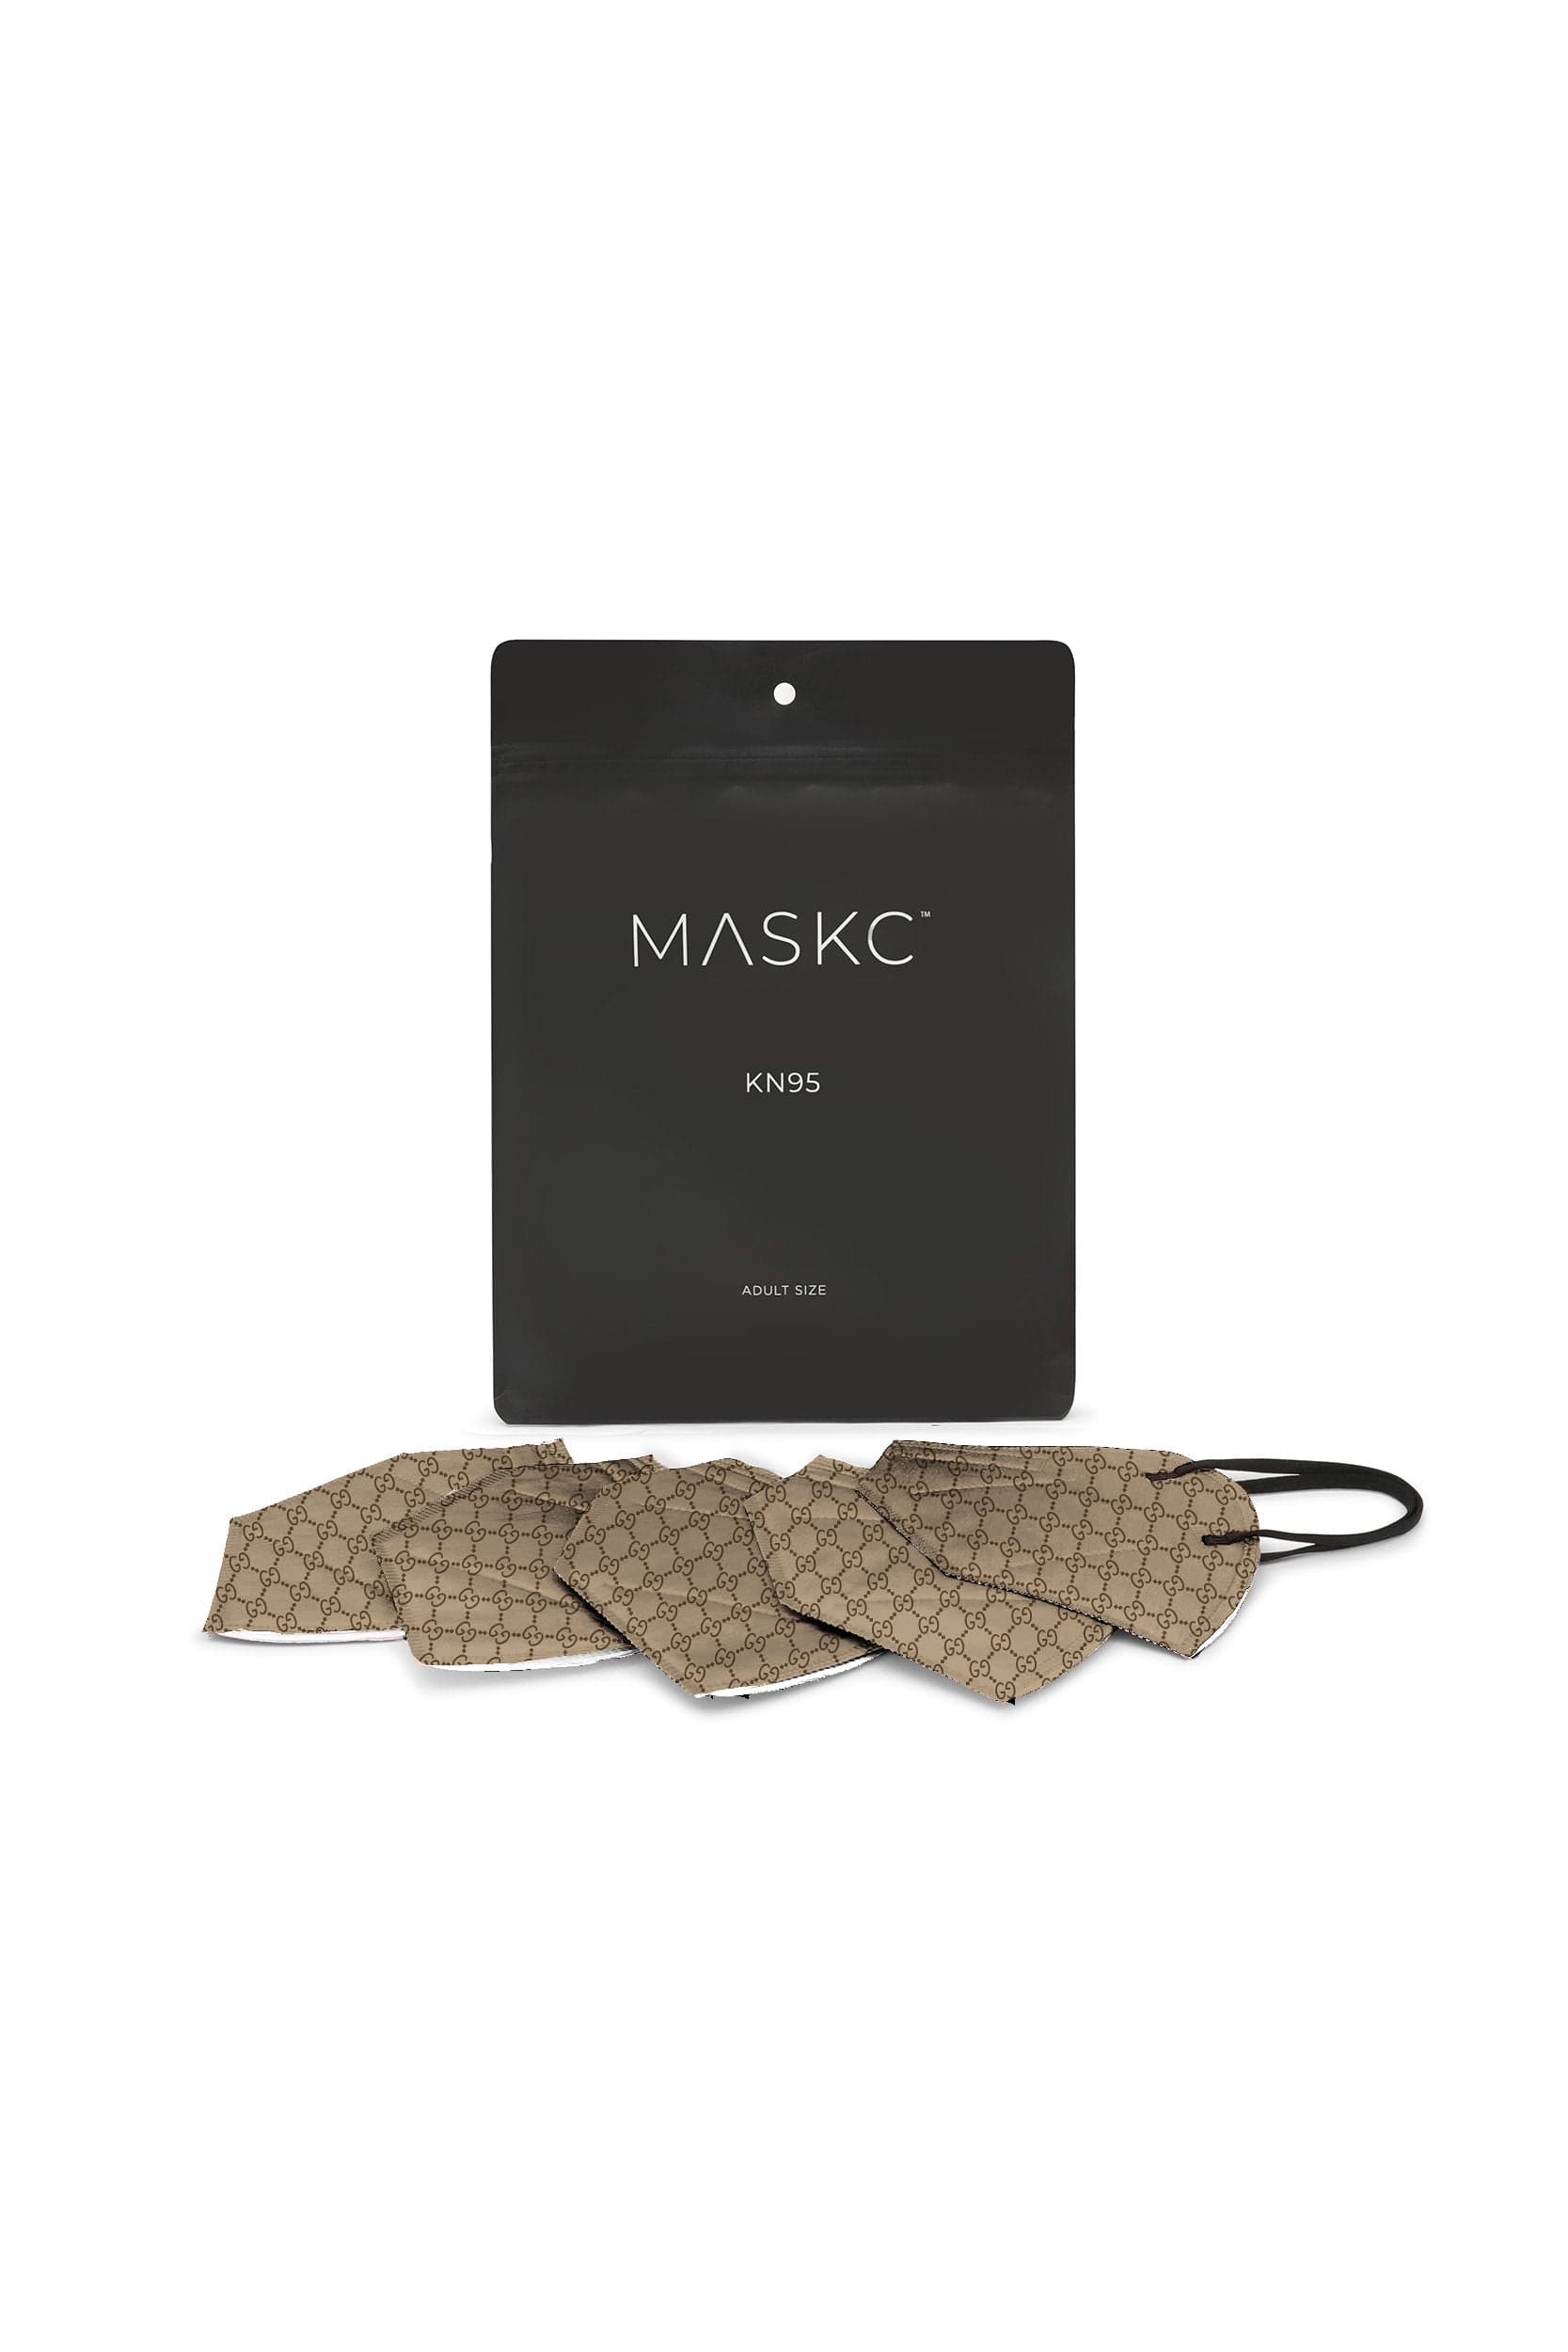 GG KN95 Face Masks - 10 Pack